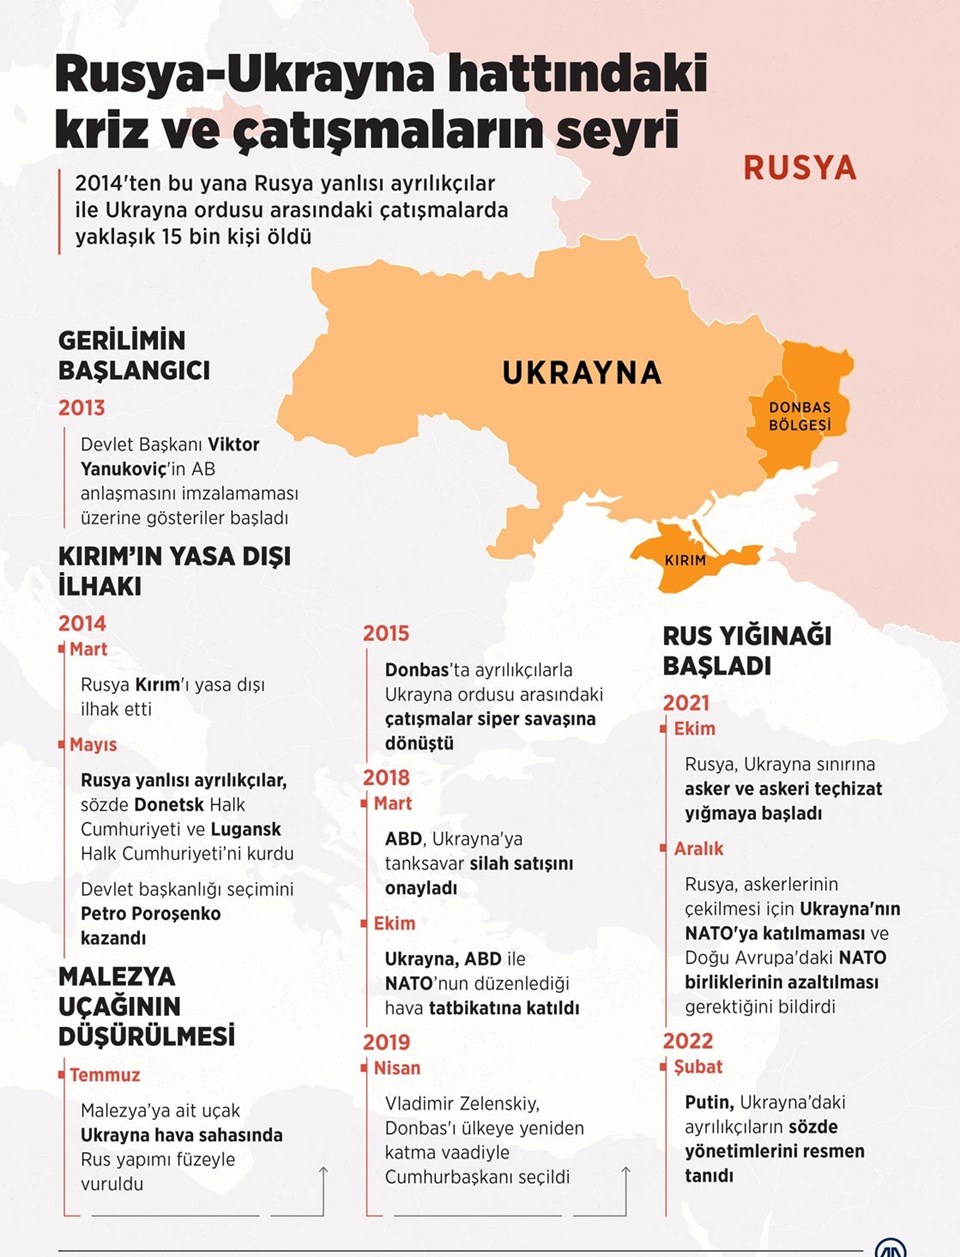 Rusya ve Ukrayna arasında 2013 yılında başlayan kriz, askeri operasyonla sonuçlandı. 